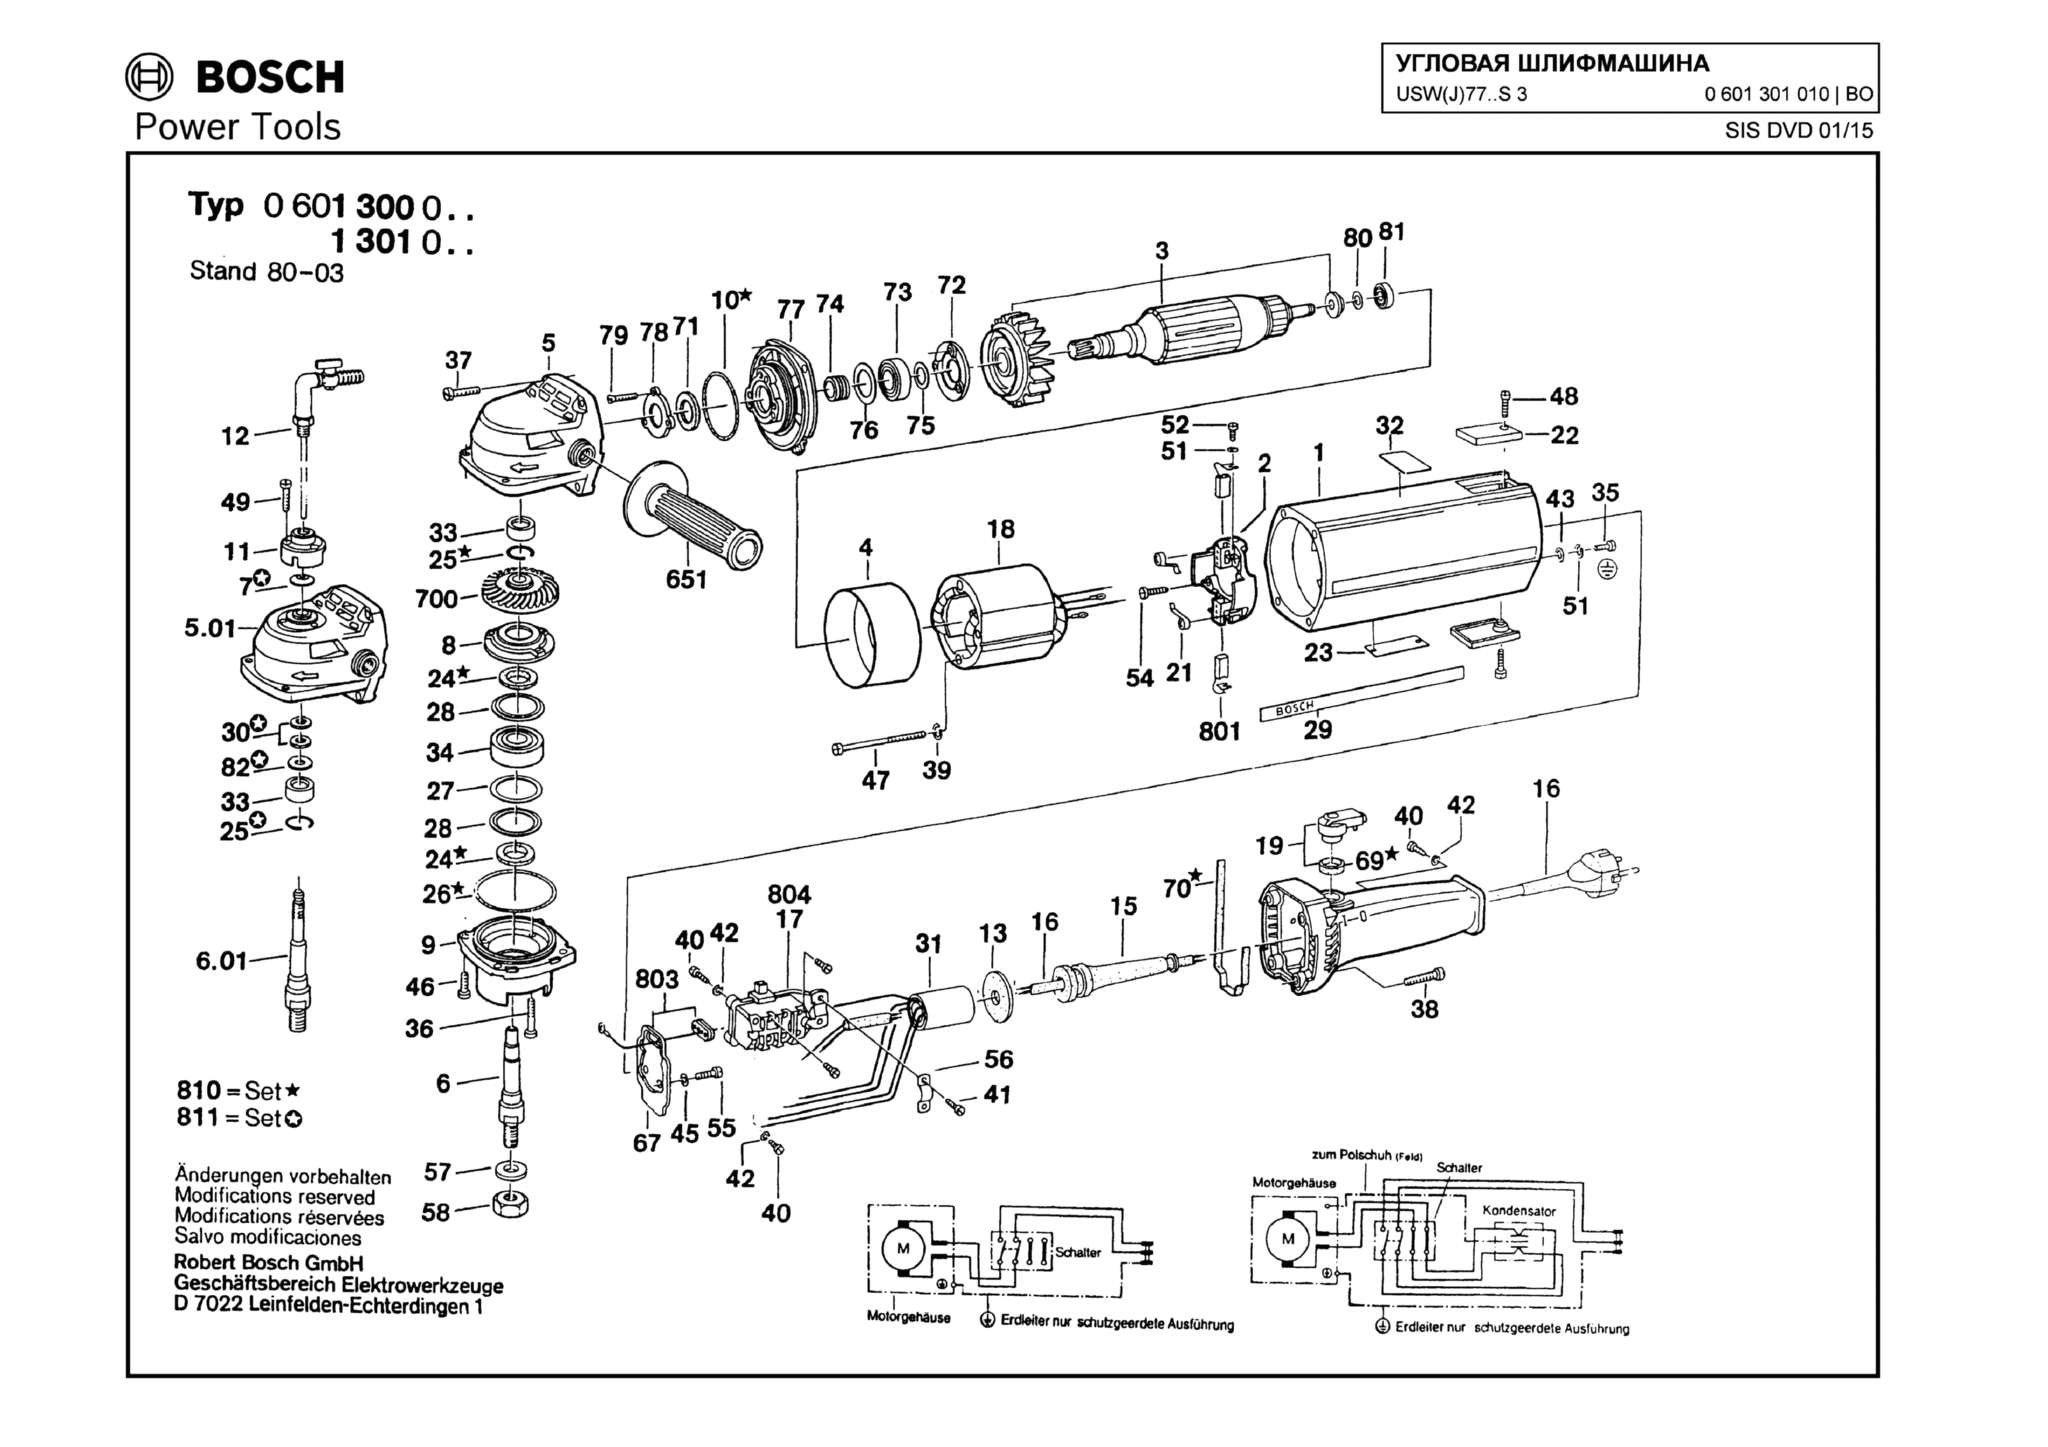 Запчасти, схема и деталировка Bosch USW(J)77..S 3 (ТИП 0601301010)